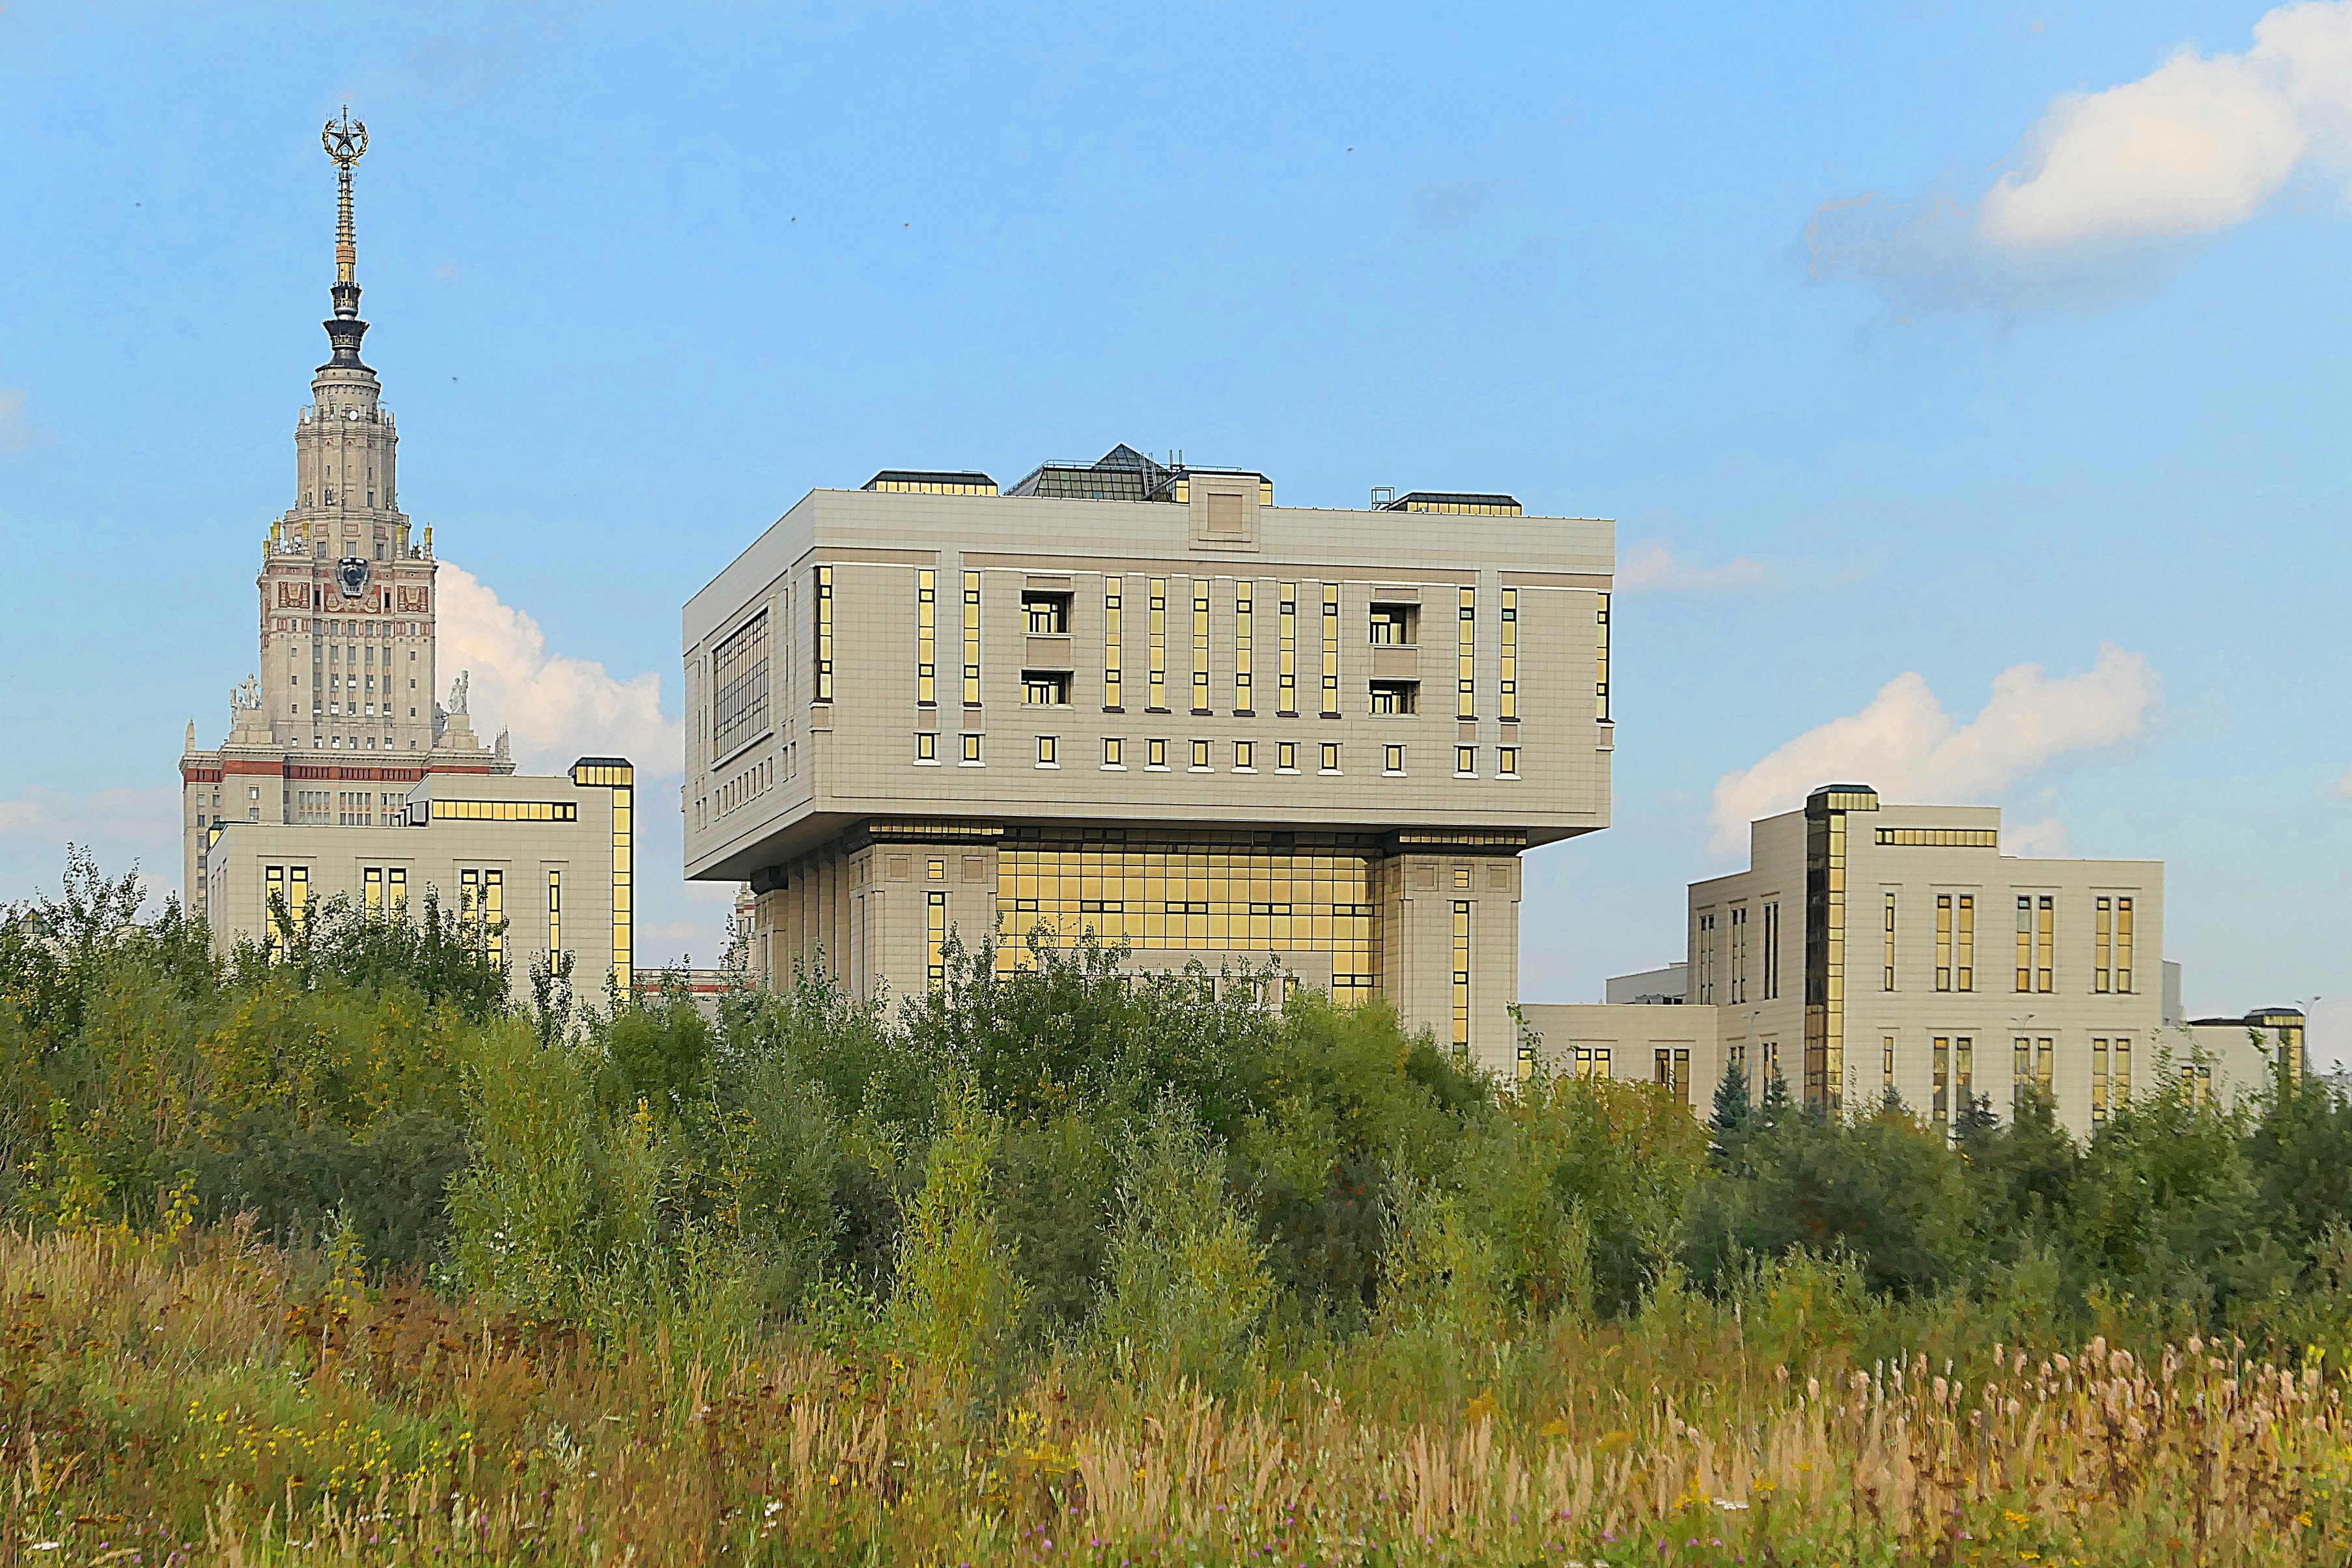 Корпуса МГУ, впереди здание Библиотеки. Фото Морошкина В.В.